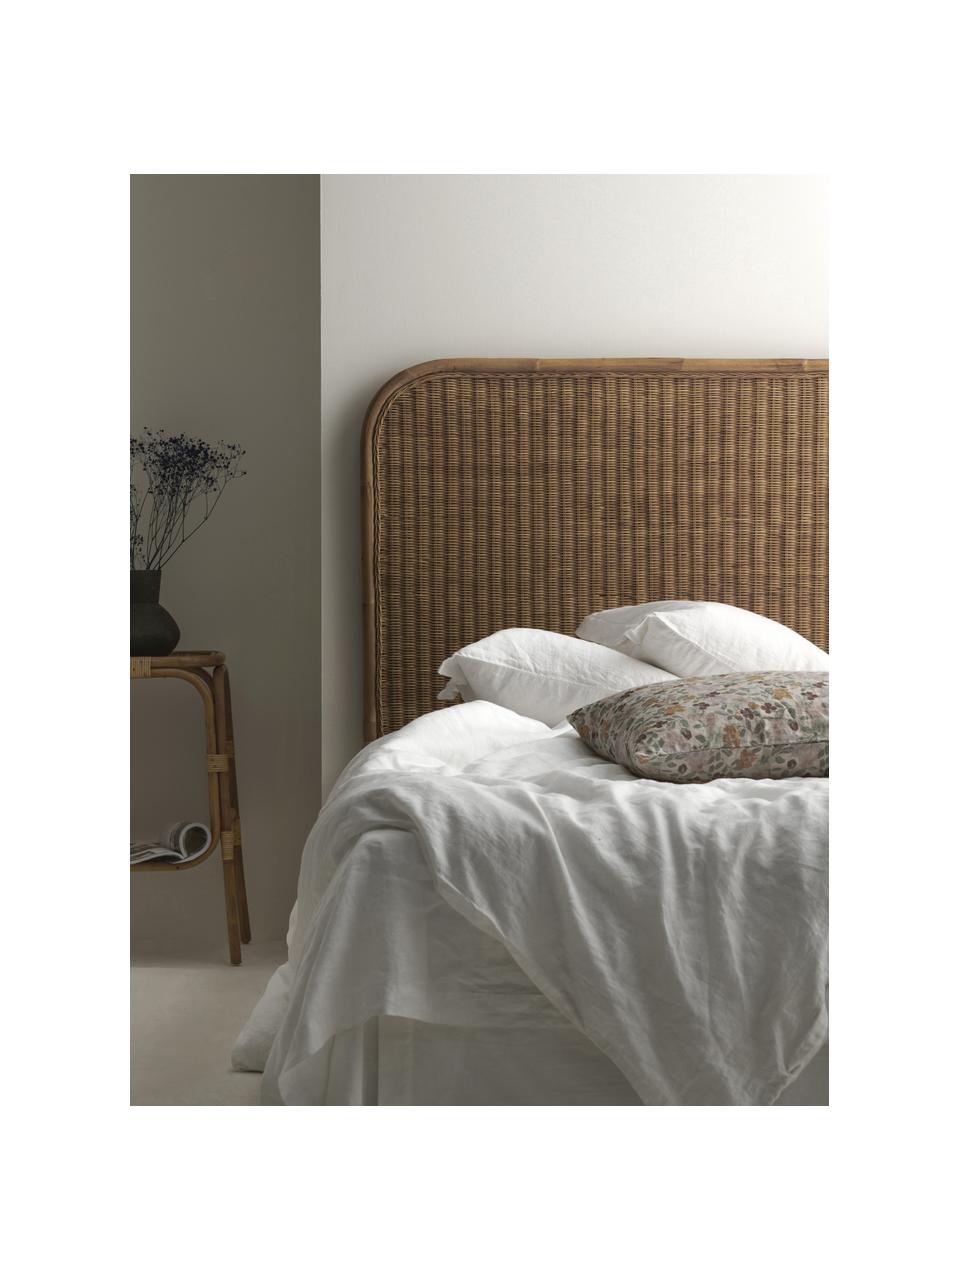 Zagłówek do łóżka z rattanu Helen, Rattan, Brązowy, S 160 x W 137 cm